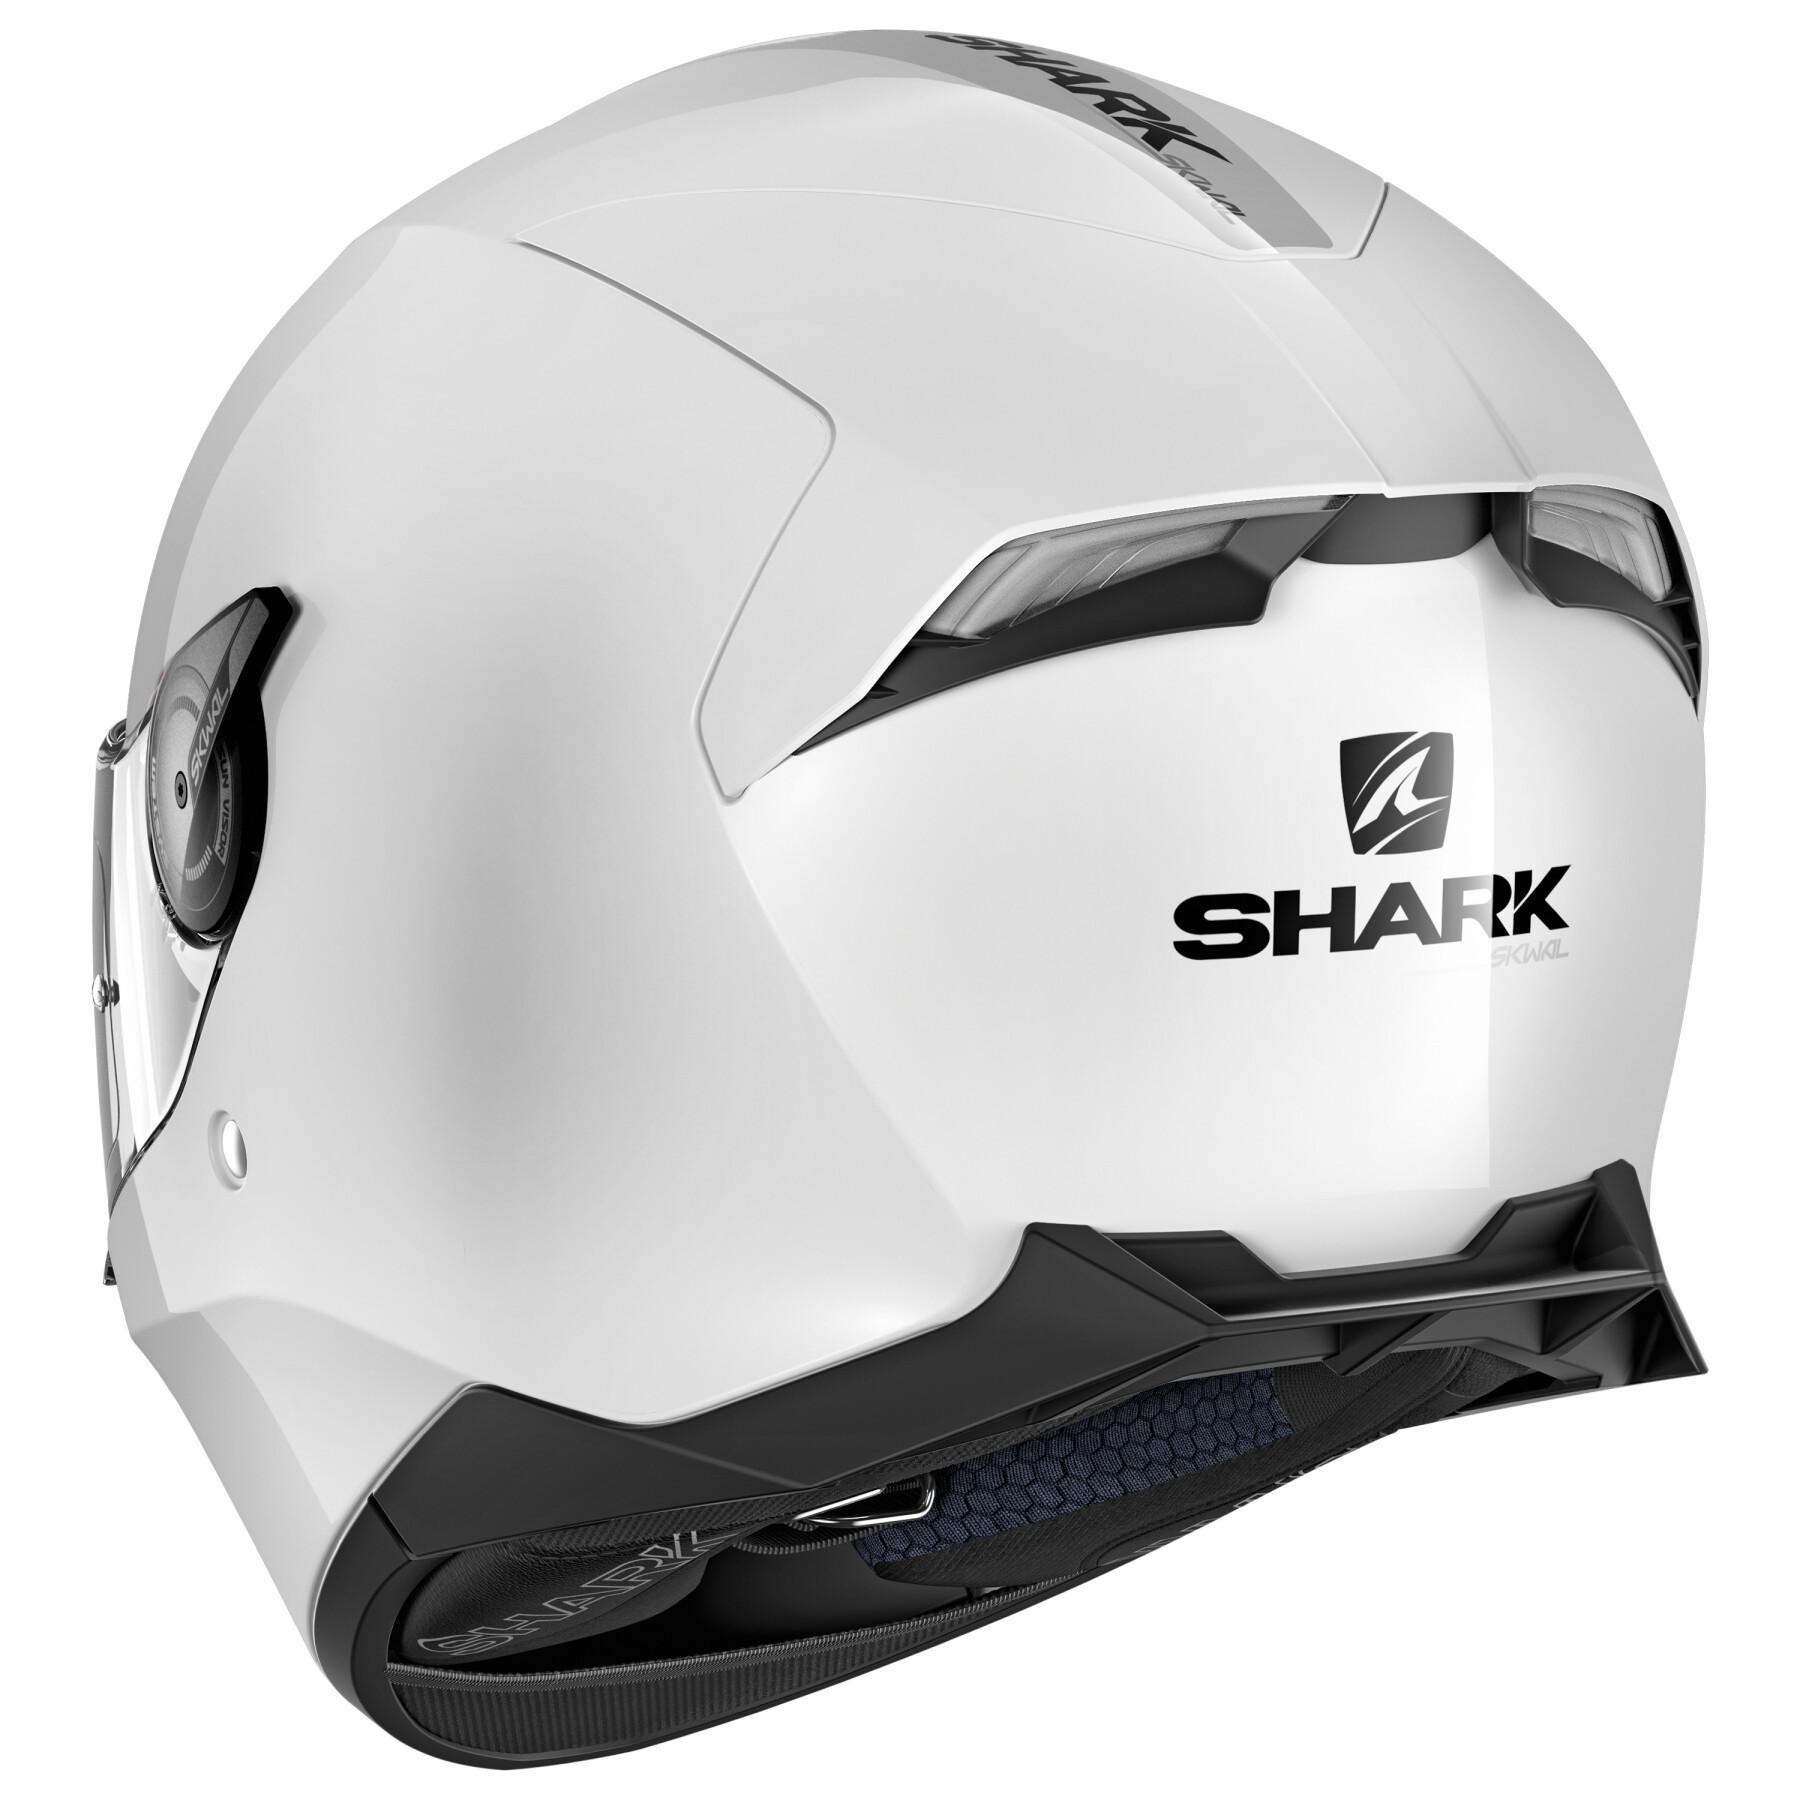 Motorrad-Integralhelm Shark skwal 2.2 blank